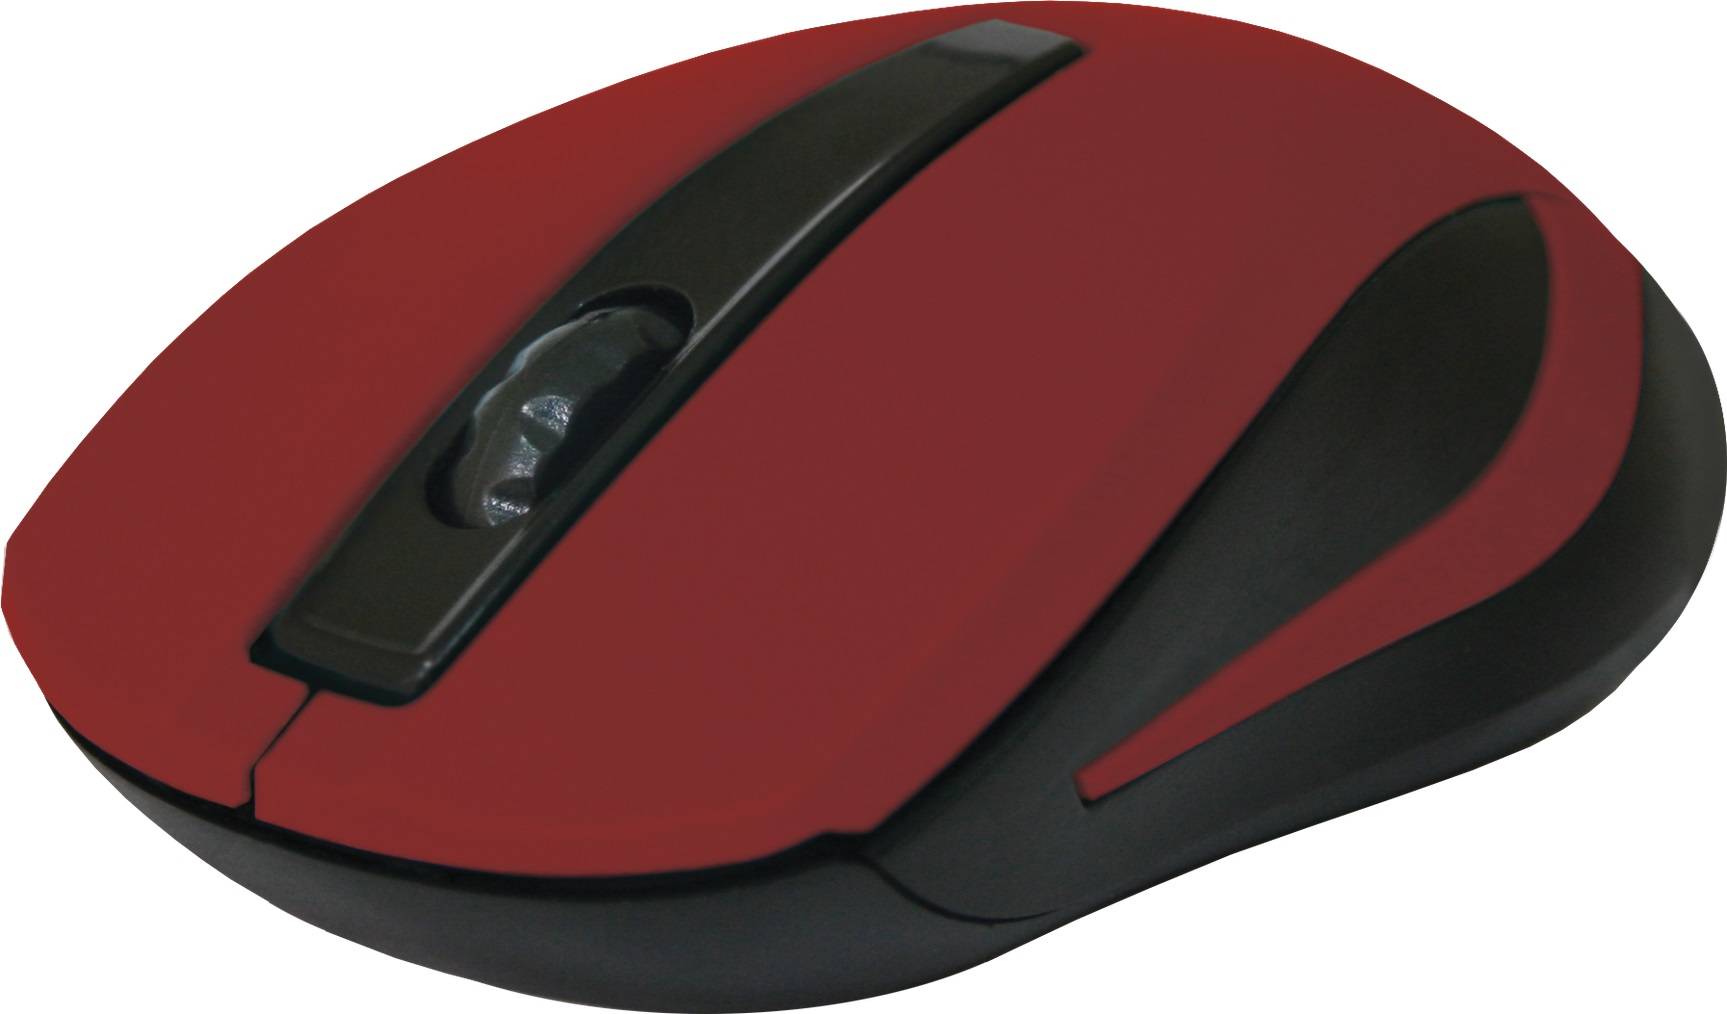 Беспроводная оптическая мышь MM-605 красный,3 кнопки,1200dpi